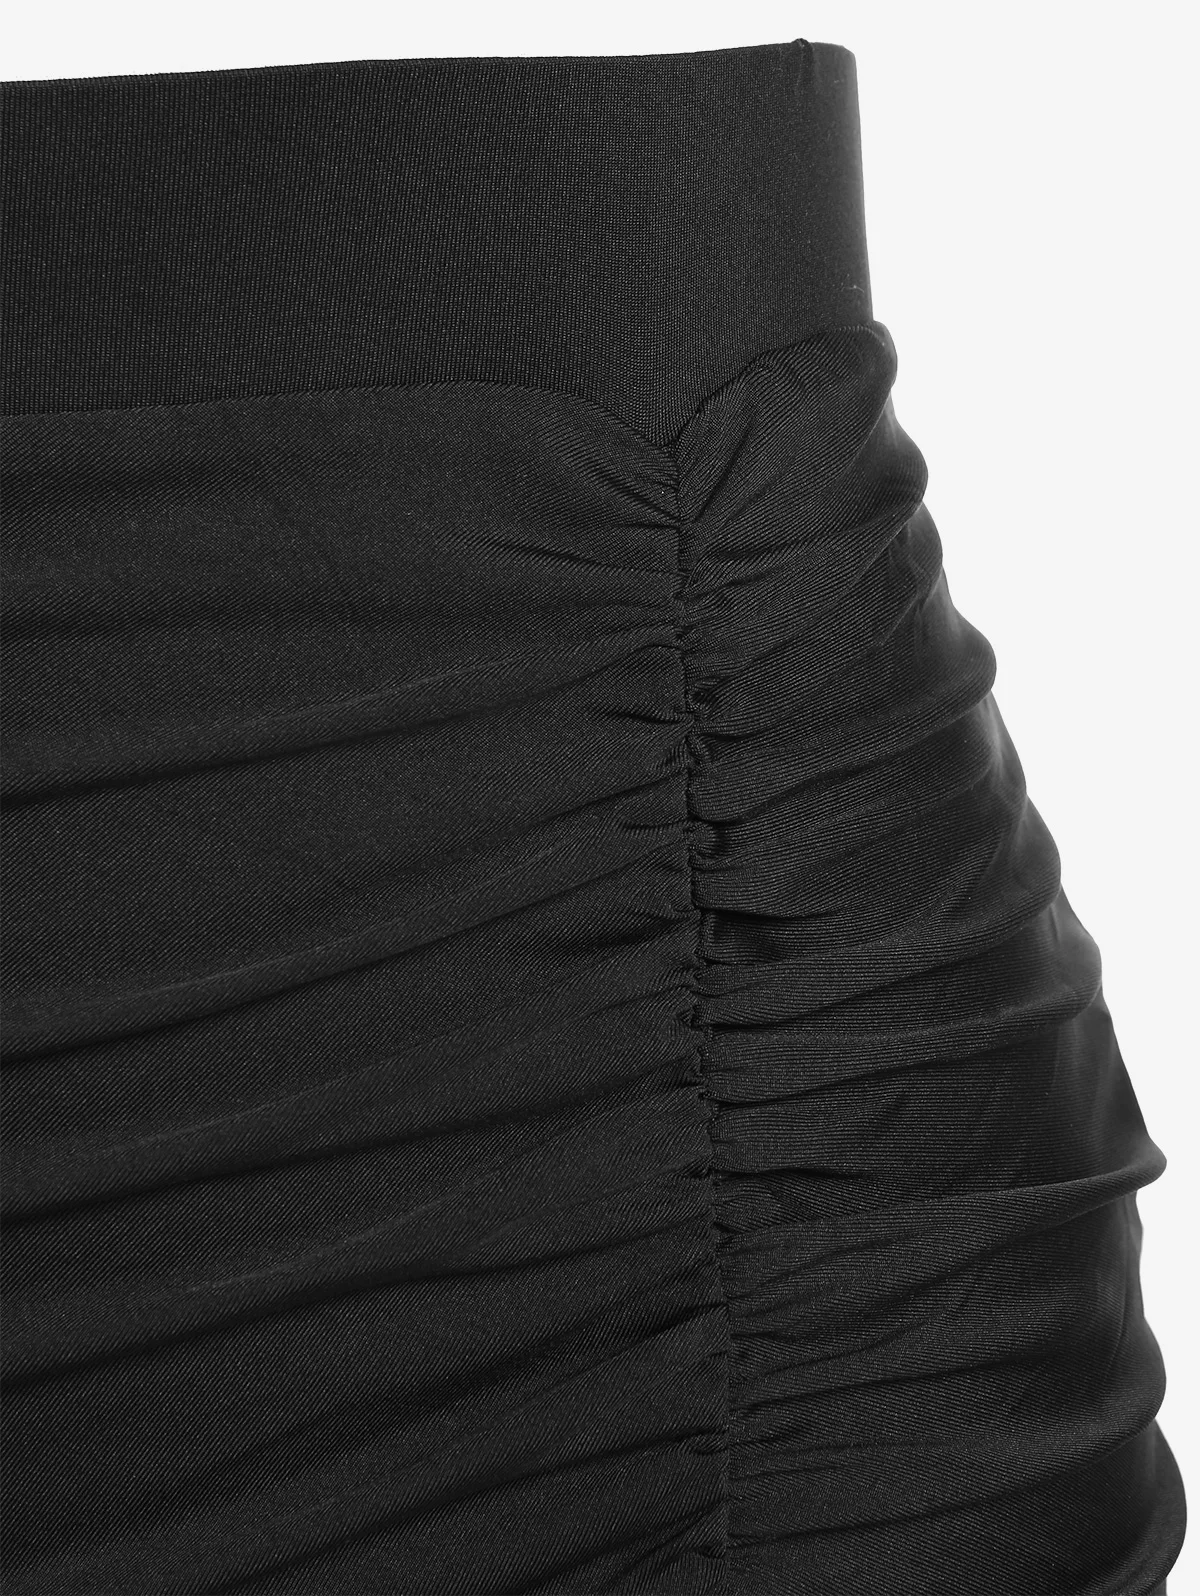 ROSEGAL שחור אלגנטי Ruched תחרה מכפלת החצאית בתוספת גודל של נשים לחיים Bodycon באורך הברך חצאיות התמונה 4